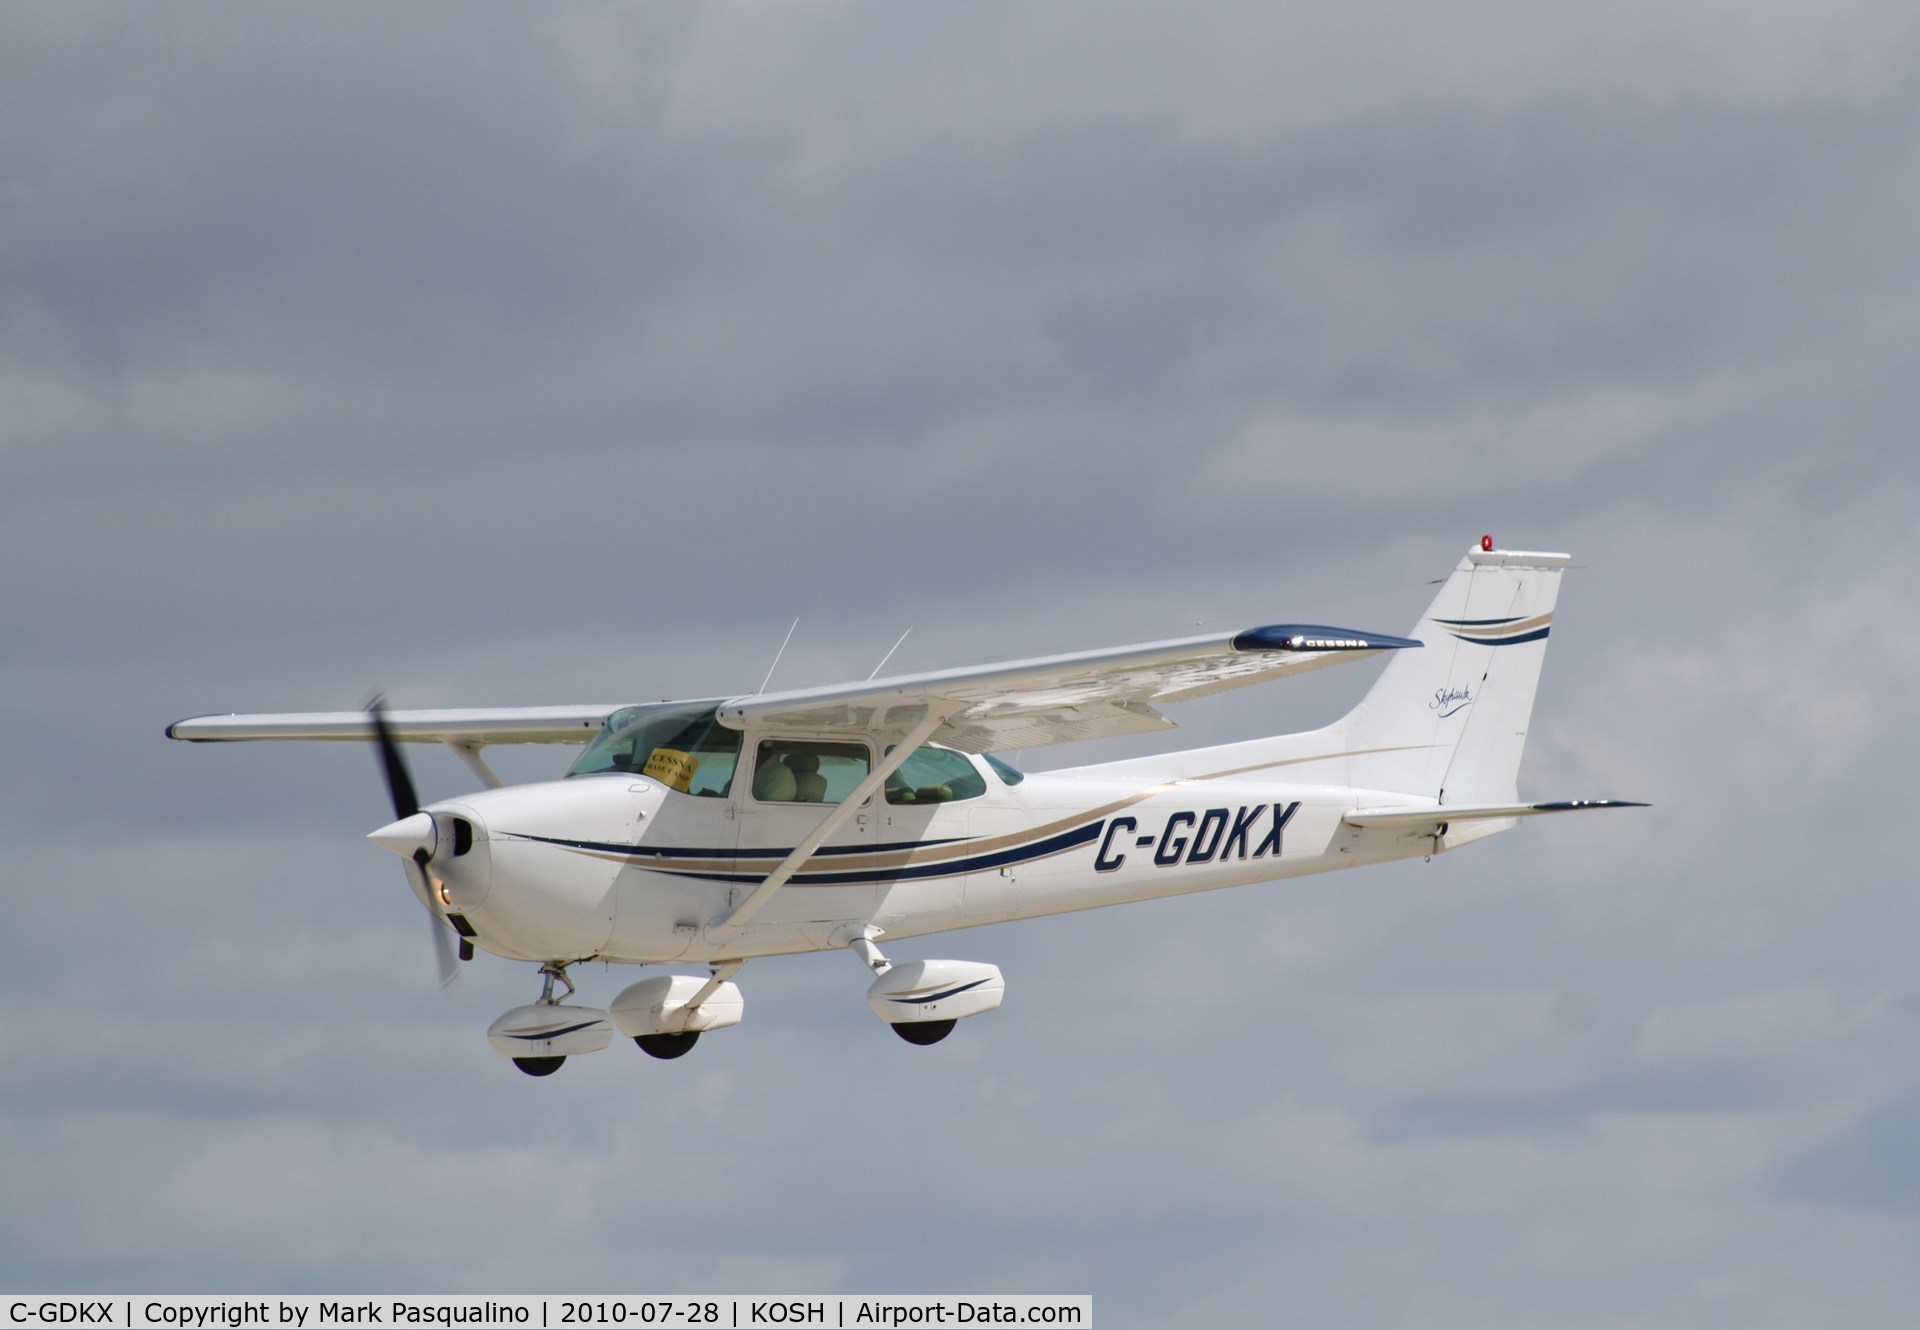 C-GDKX, 1974 Cessna 172M C/N 17263252, Cessna 172M